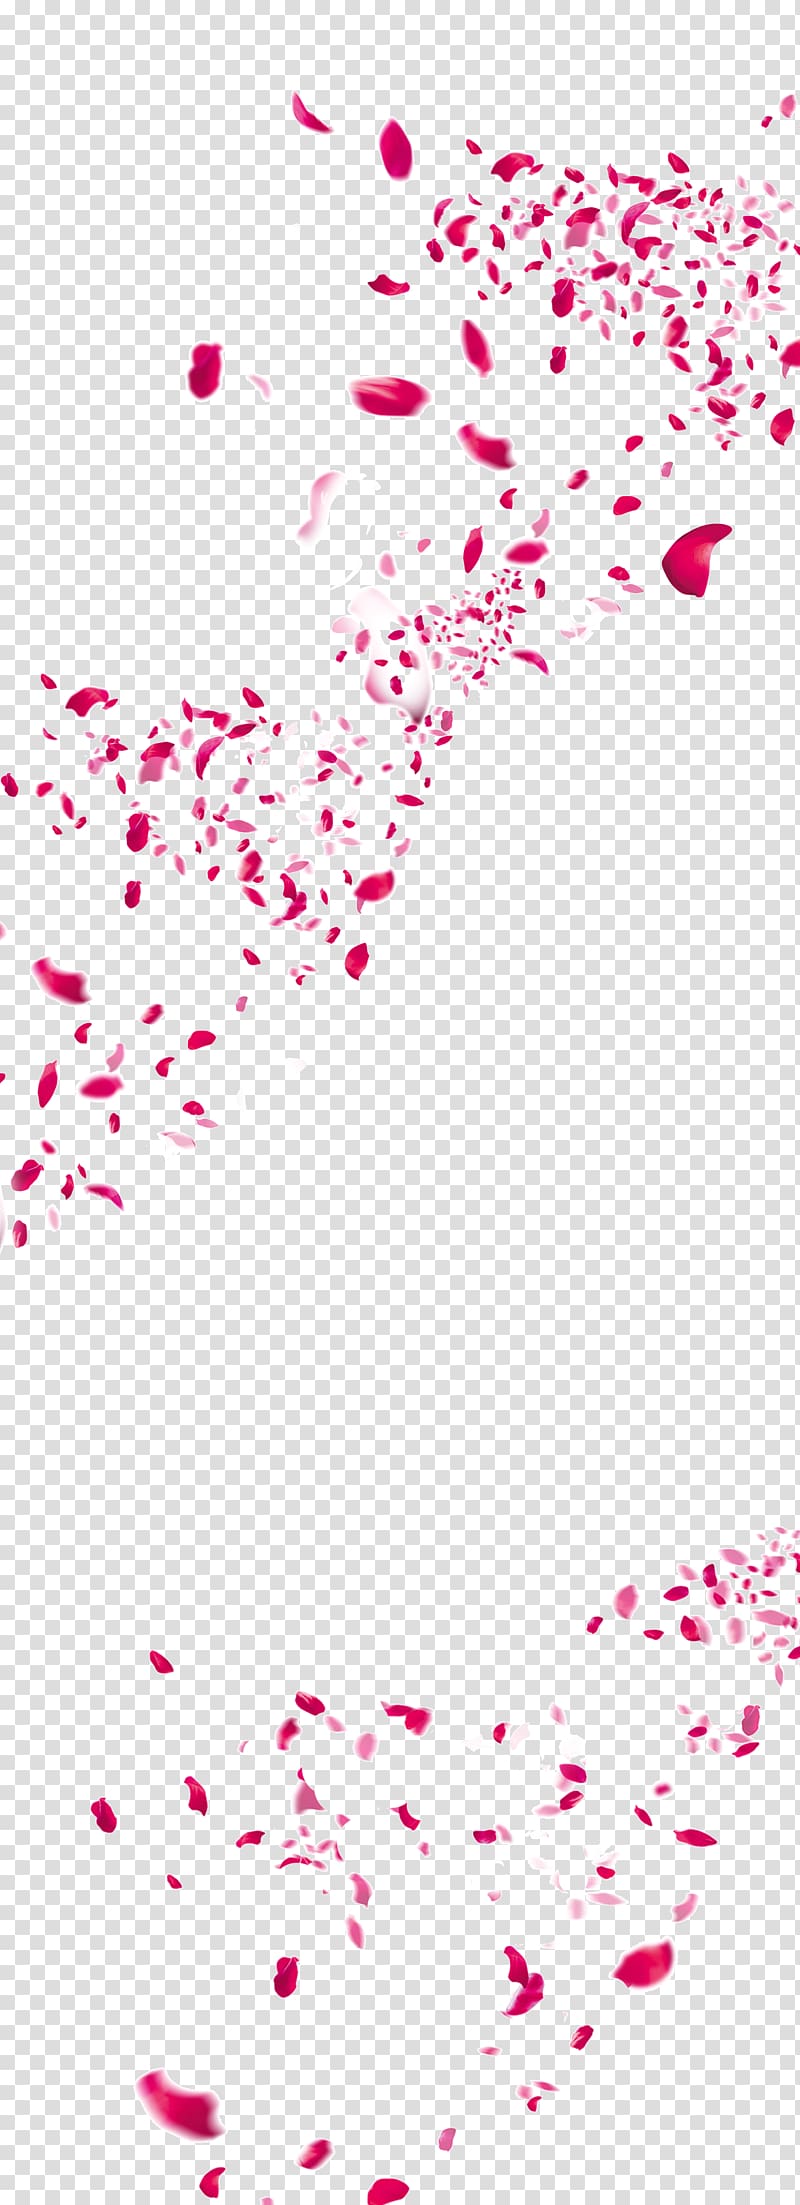 red petals illustration, Flower Petal, Scattered flower petals transparent background PNG clipart